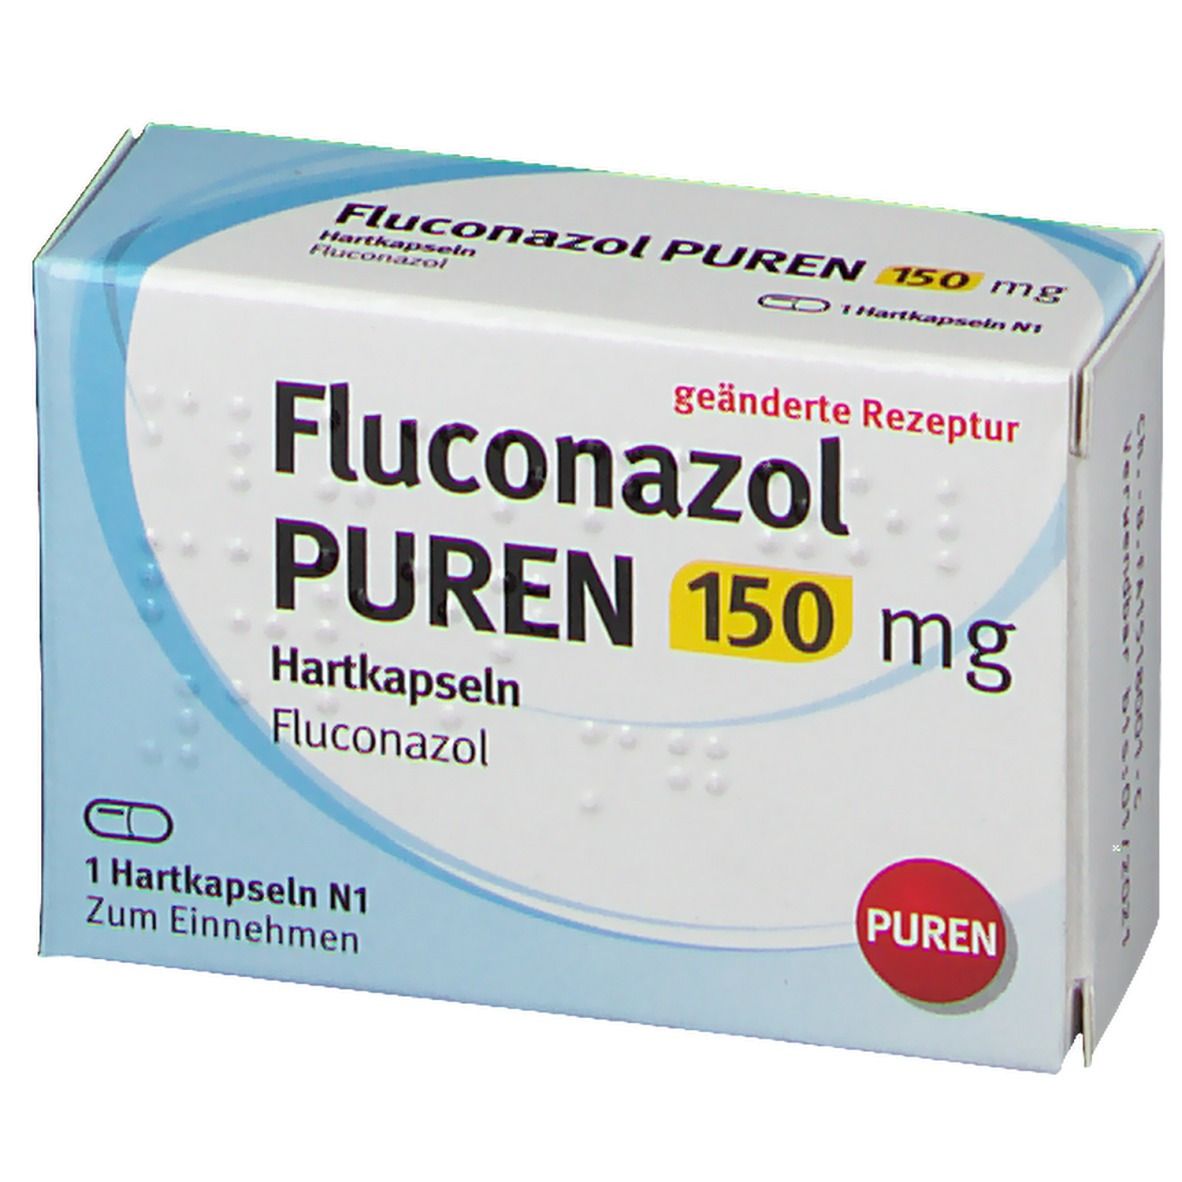 Fluconazol PUREN 150 mg